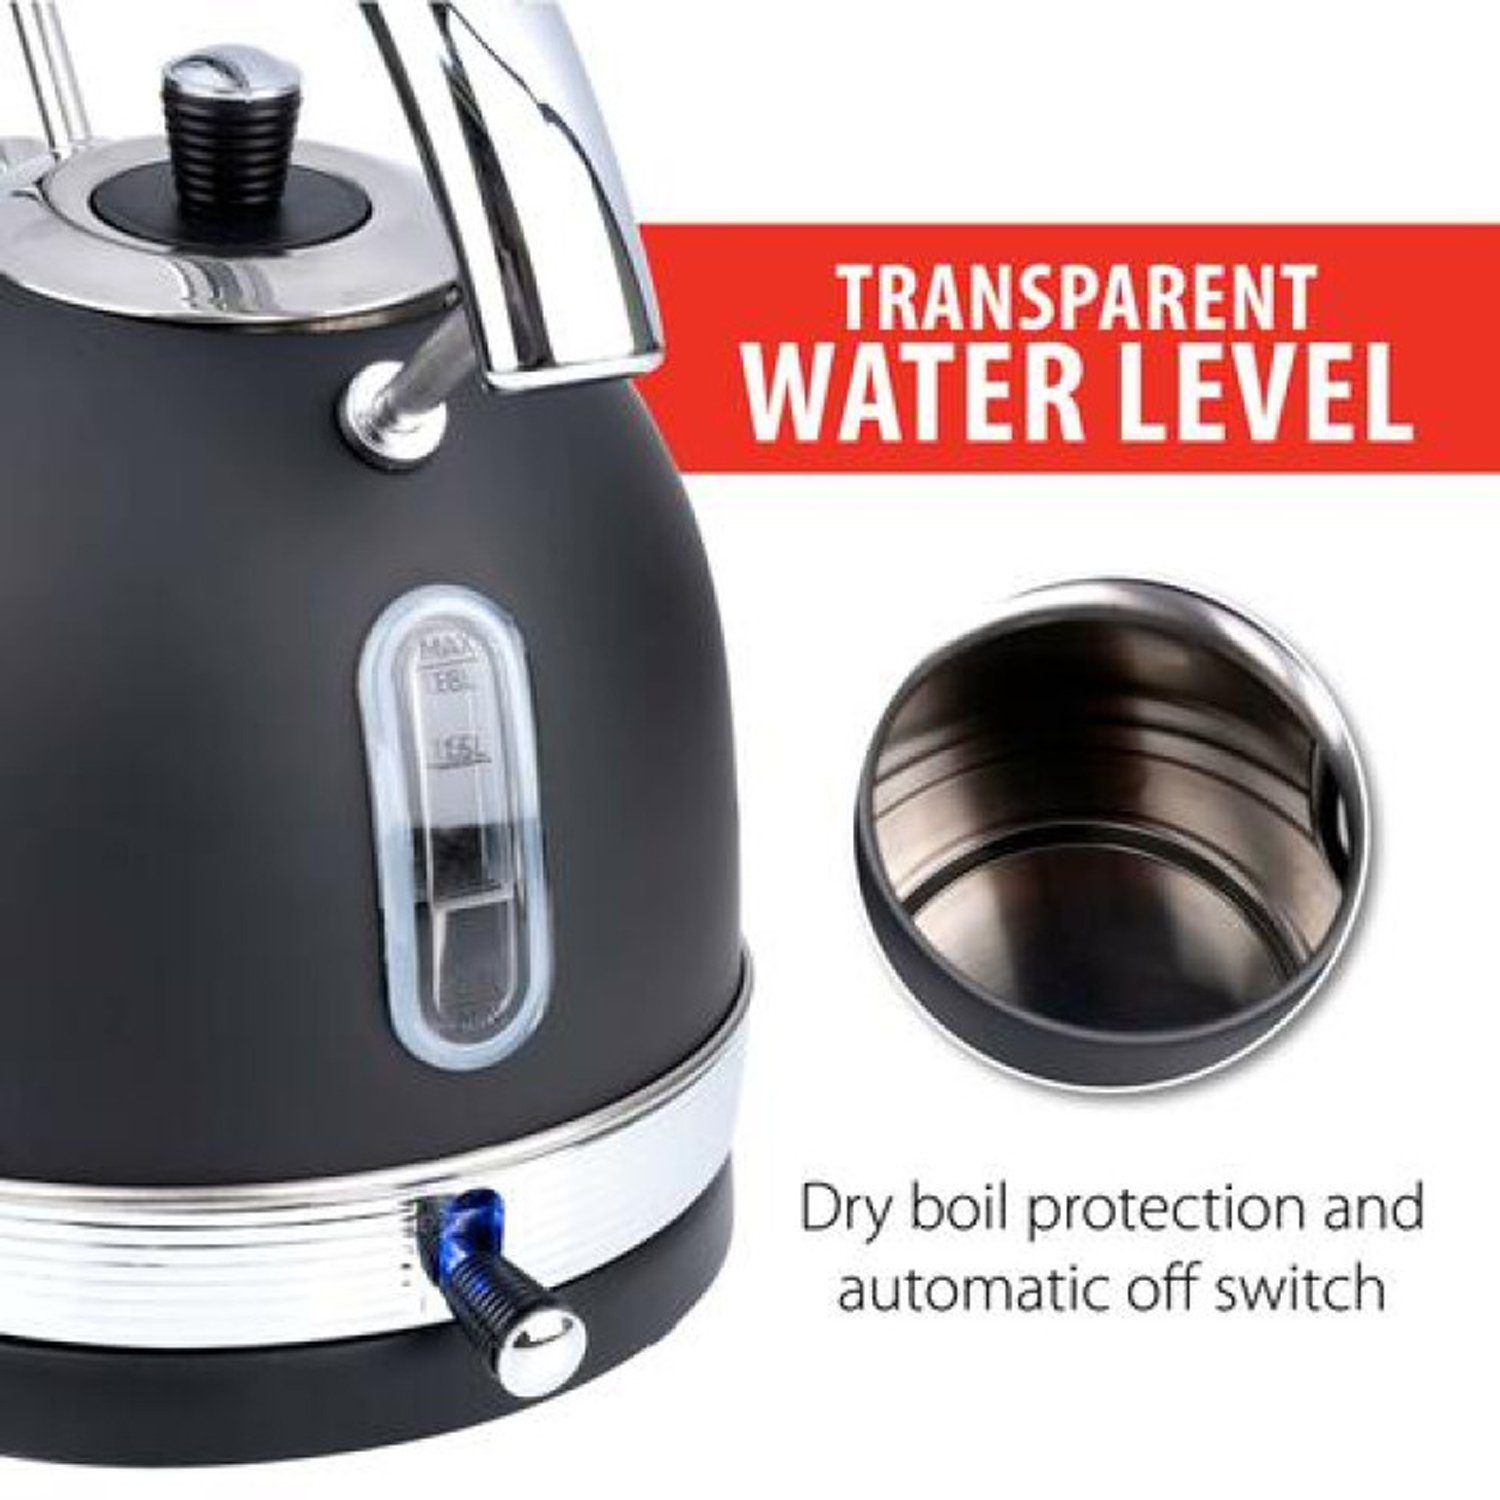 1,8Liter Edelstahl Wasserkessel Thermostat INDA-Exclusiv Wasserkocher Abschaltautomatik 2200W